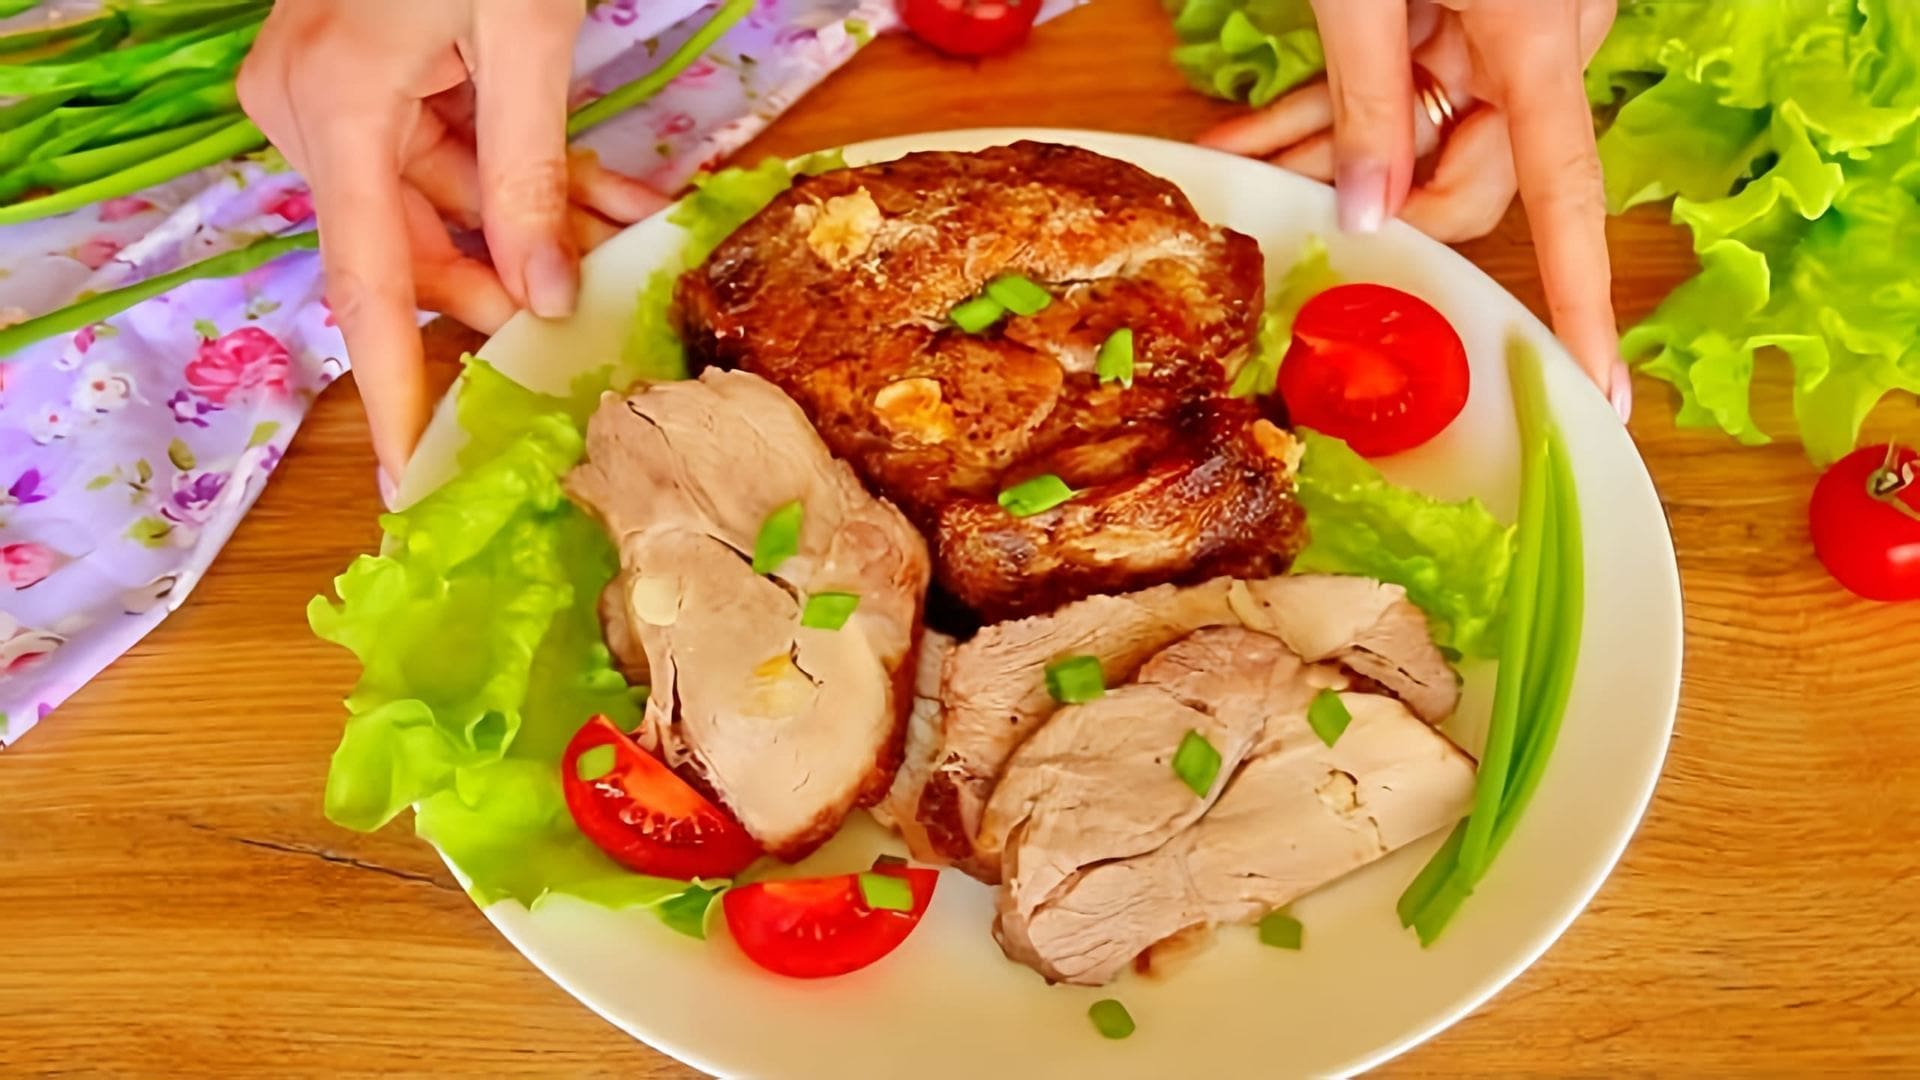 В этом видео демонстрируется рецепт приготовления буженины из свинины